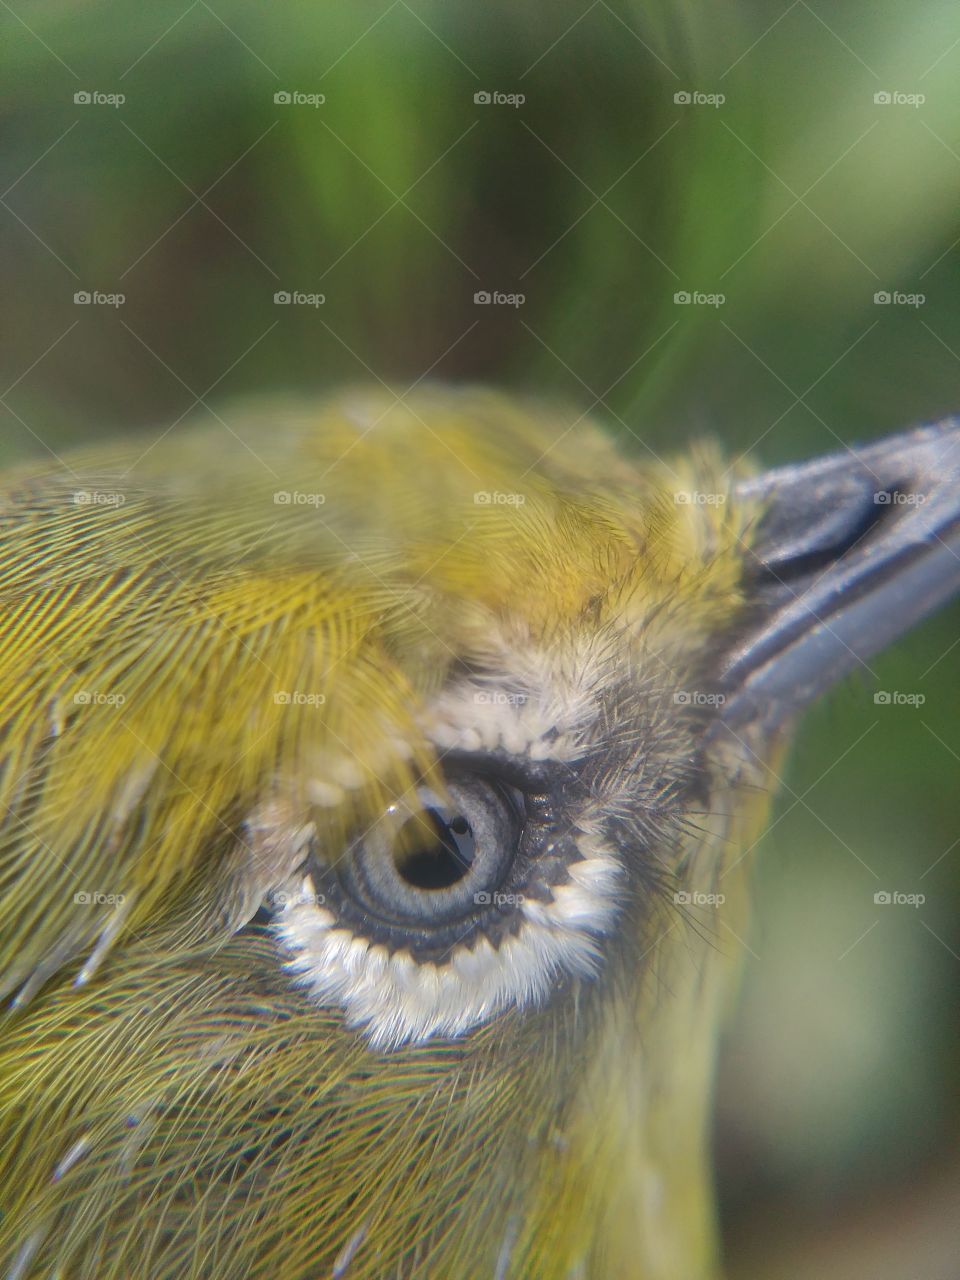 Extreme close-up of bird